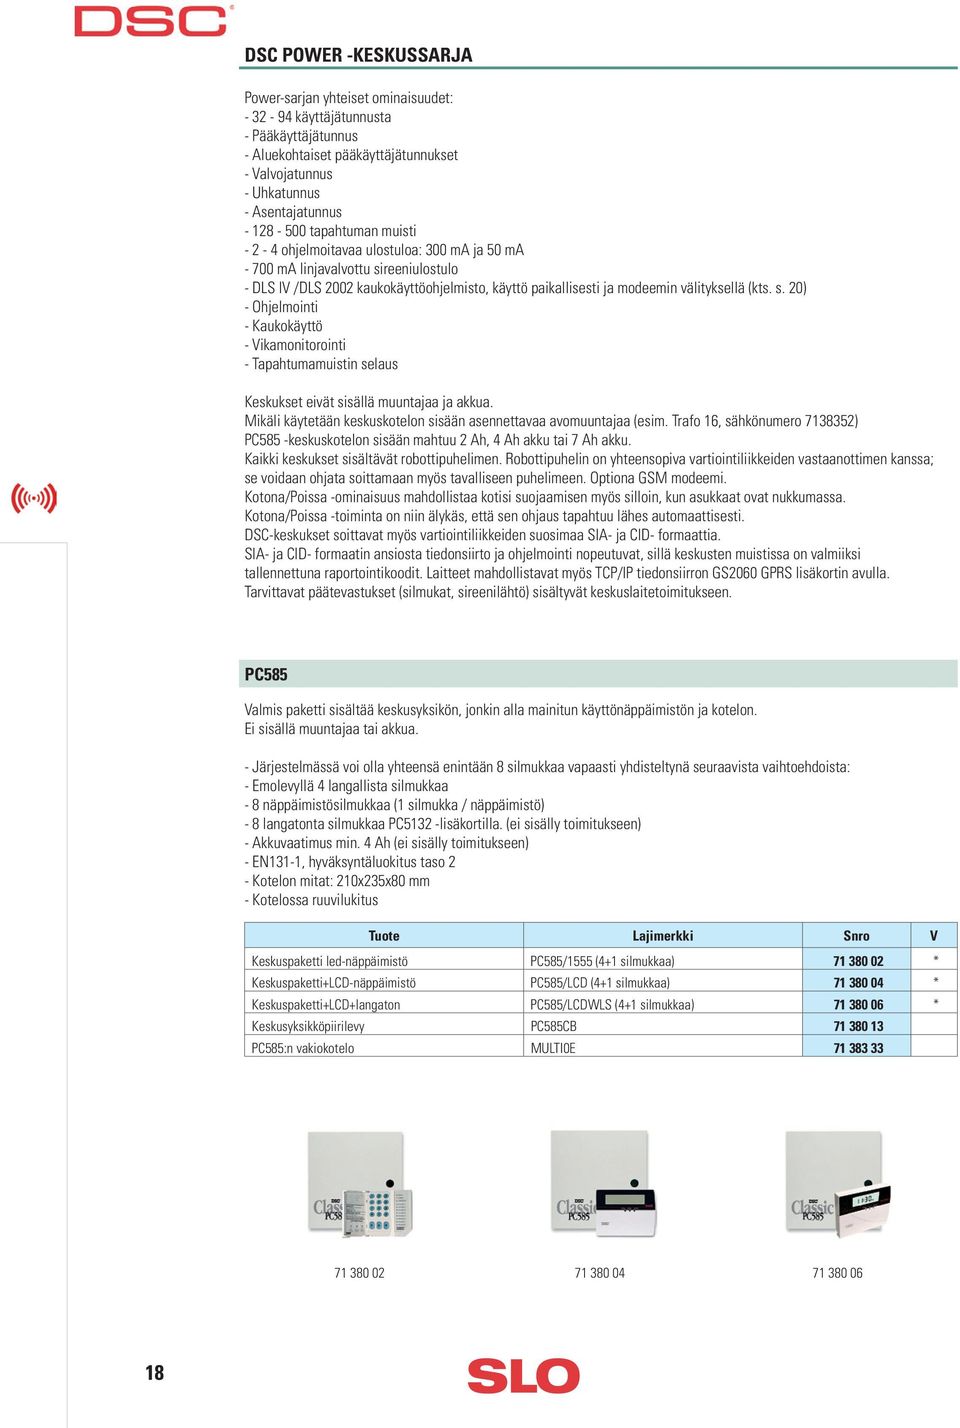 reeniulostulo - DLS IV /DLS 2002 kaukokäyttöohjelmisto, käyttö paikallisesti ja modeemin välityksellä (kts. s.